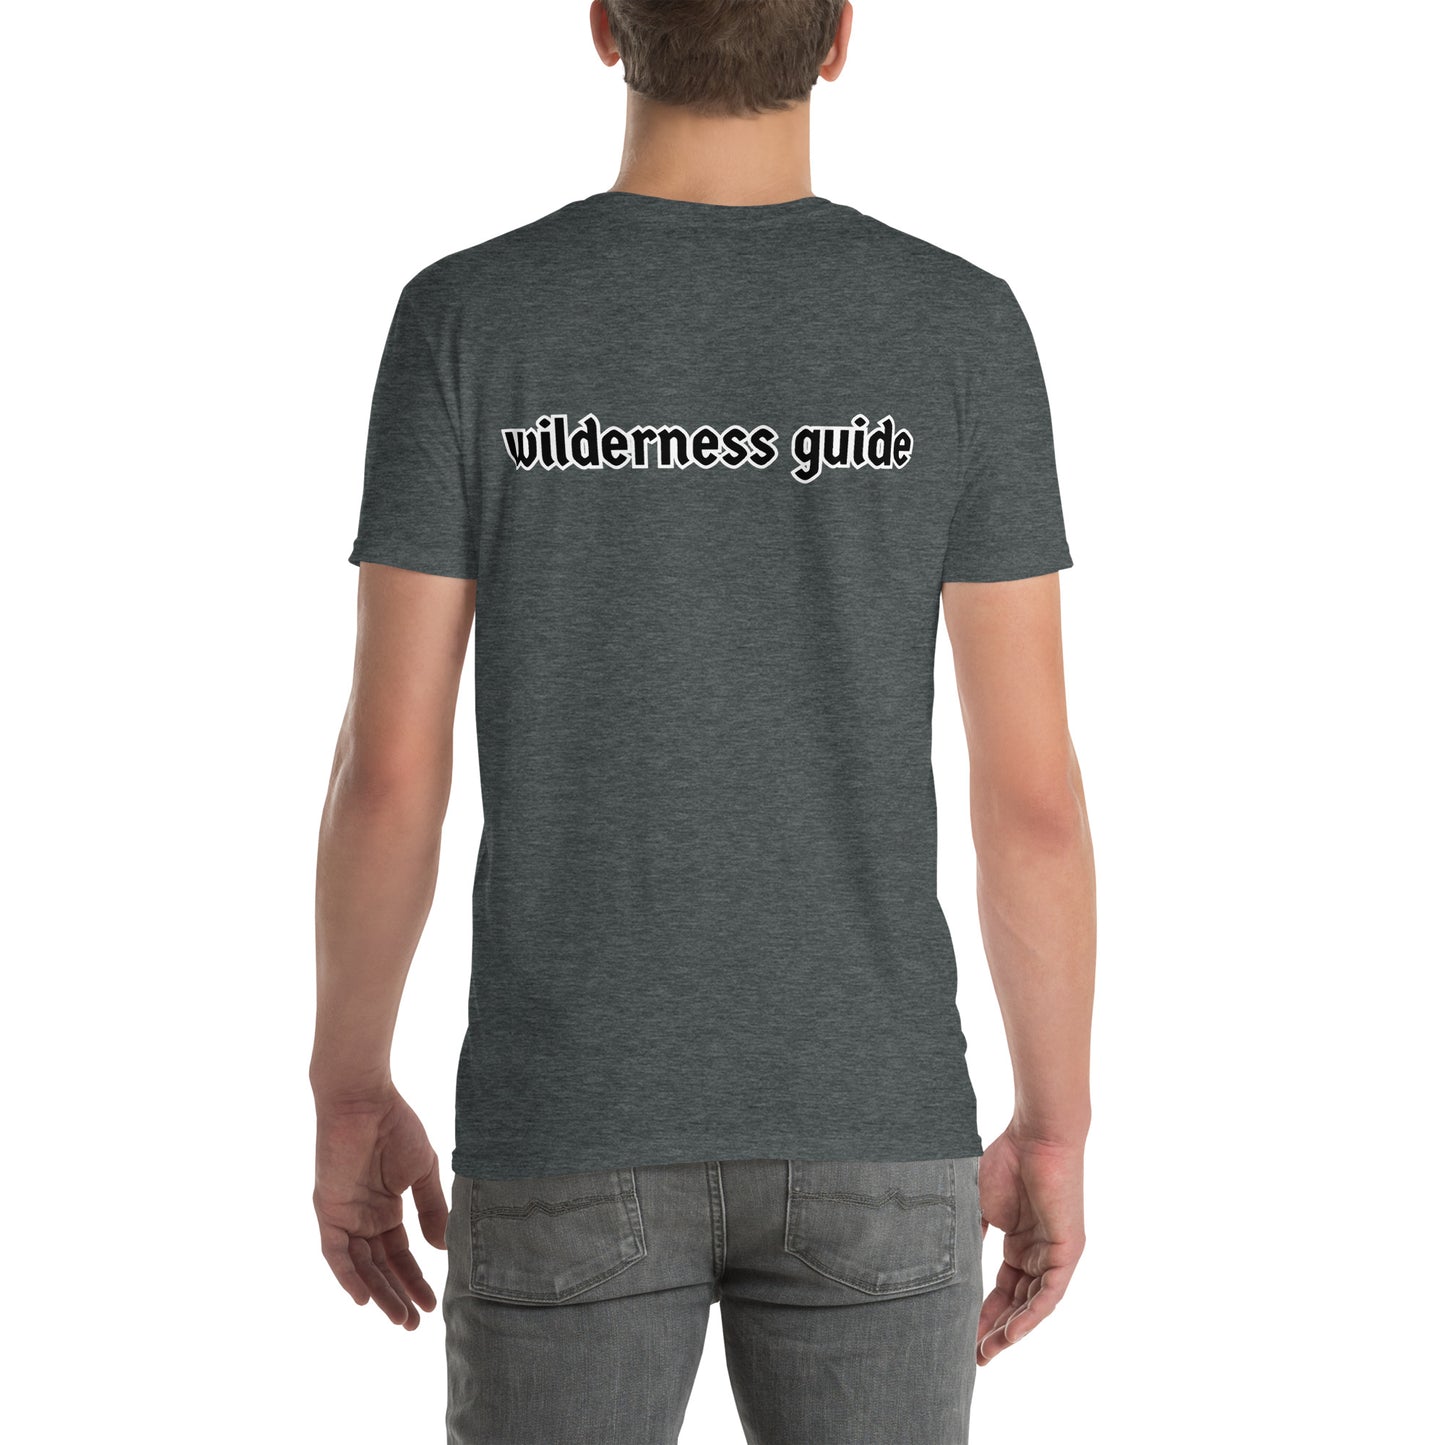 "Wild Badger" t-paita (rinta + teksti selässä)